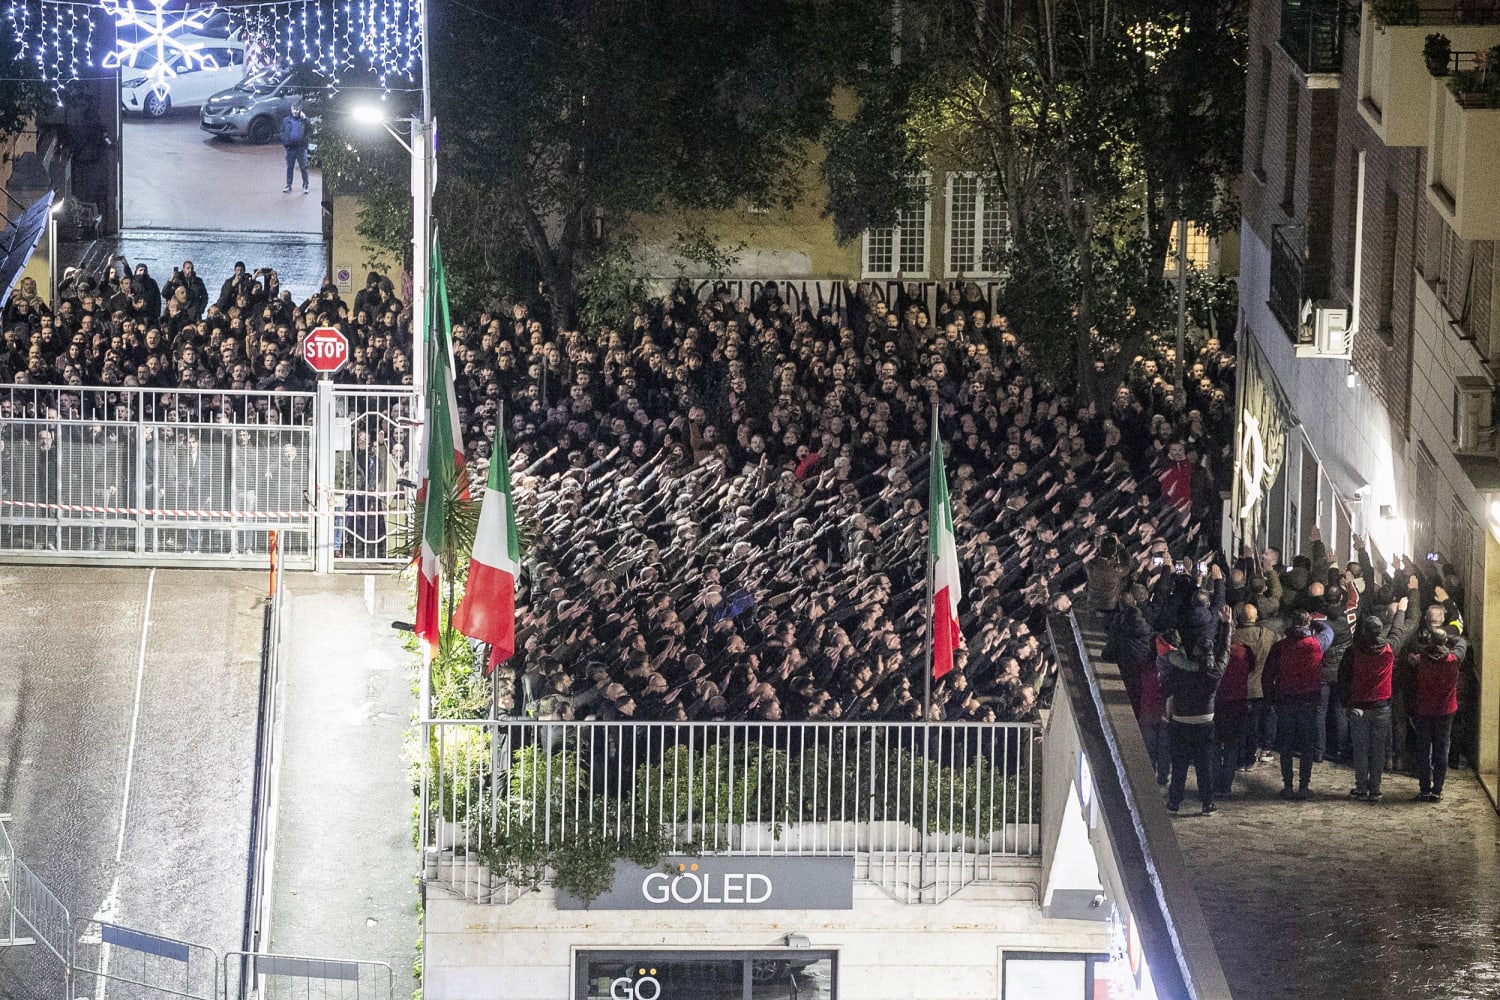 Hněv v Itálii poté, co stovky lidí vzdávaly fašistické pozdravy na shromáždění v Římě